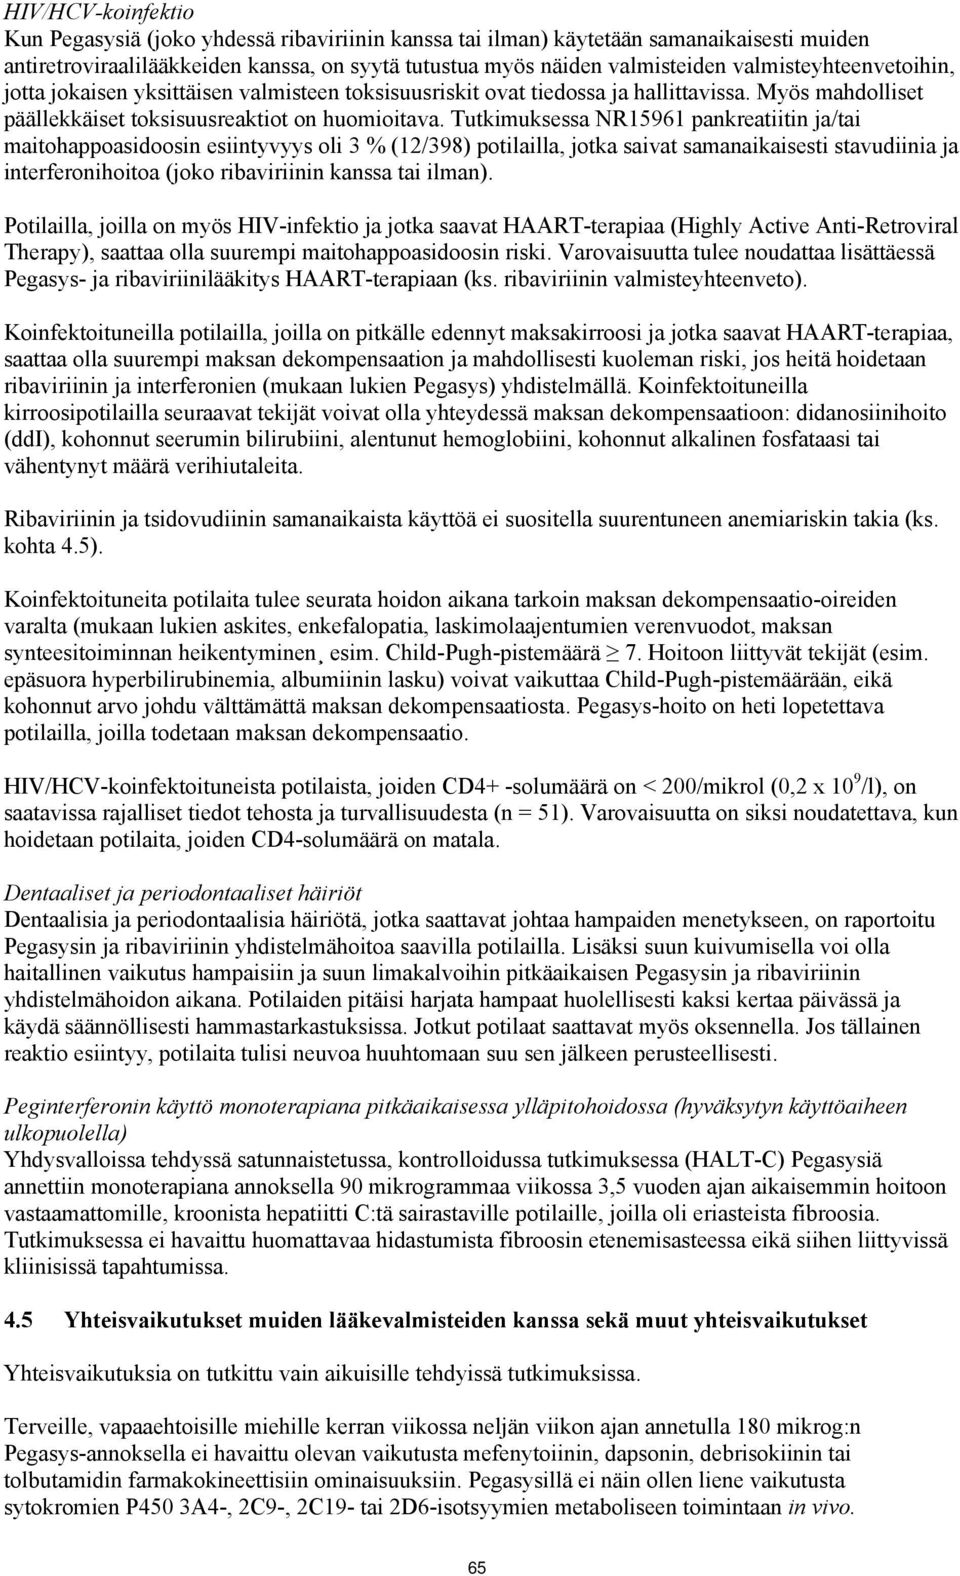 Tutkimuksessa NR15961 pankreatiitin ja/tai maitohappoasidoosin esiintyvyys oli 3 % (12/398) potilailla, jotka saivat samanaikaisesti stavudiinia ja interferonihoitoa (joko n kanssa tai ilman).